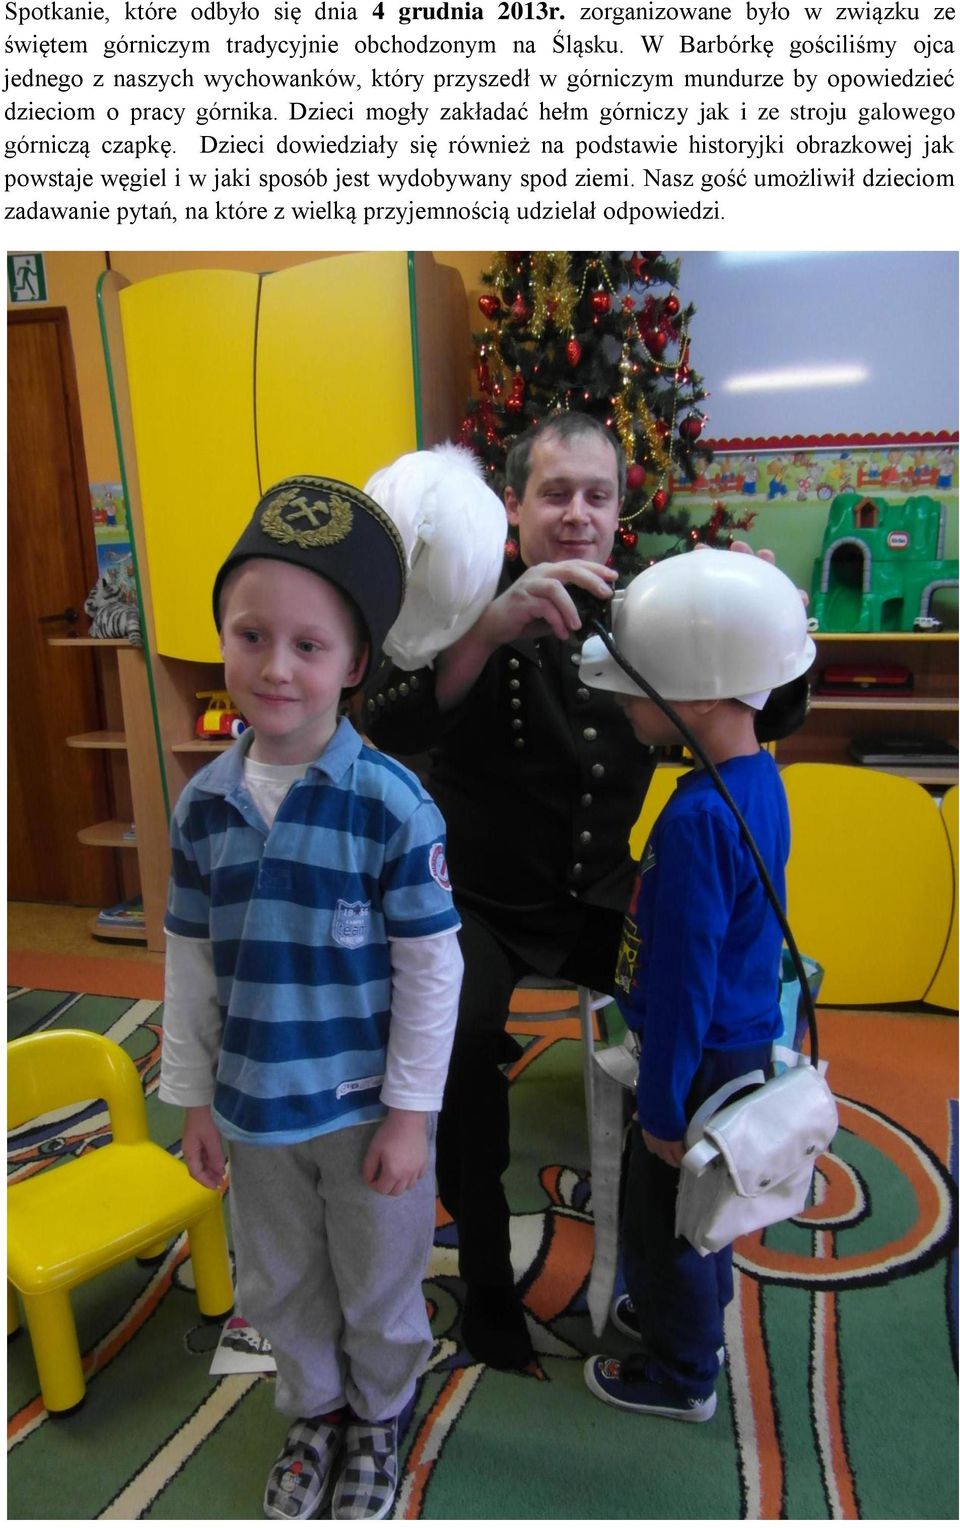 Dzieci mogły zakładać hełm górniczy jak i ze stroju galowego górniczą czapkę.